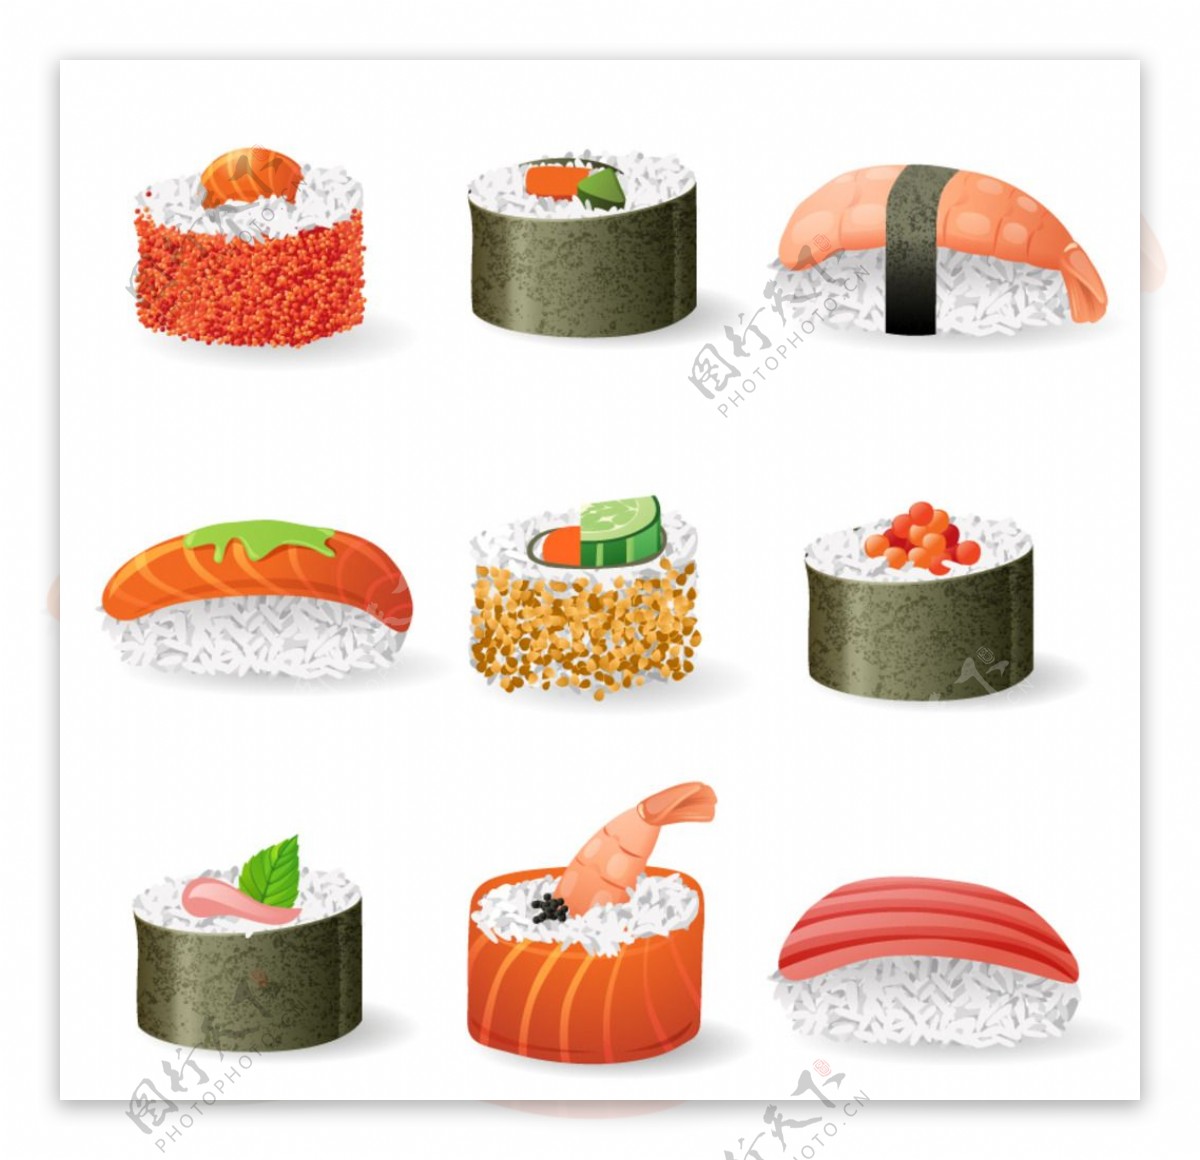 日本料理寿司图片